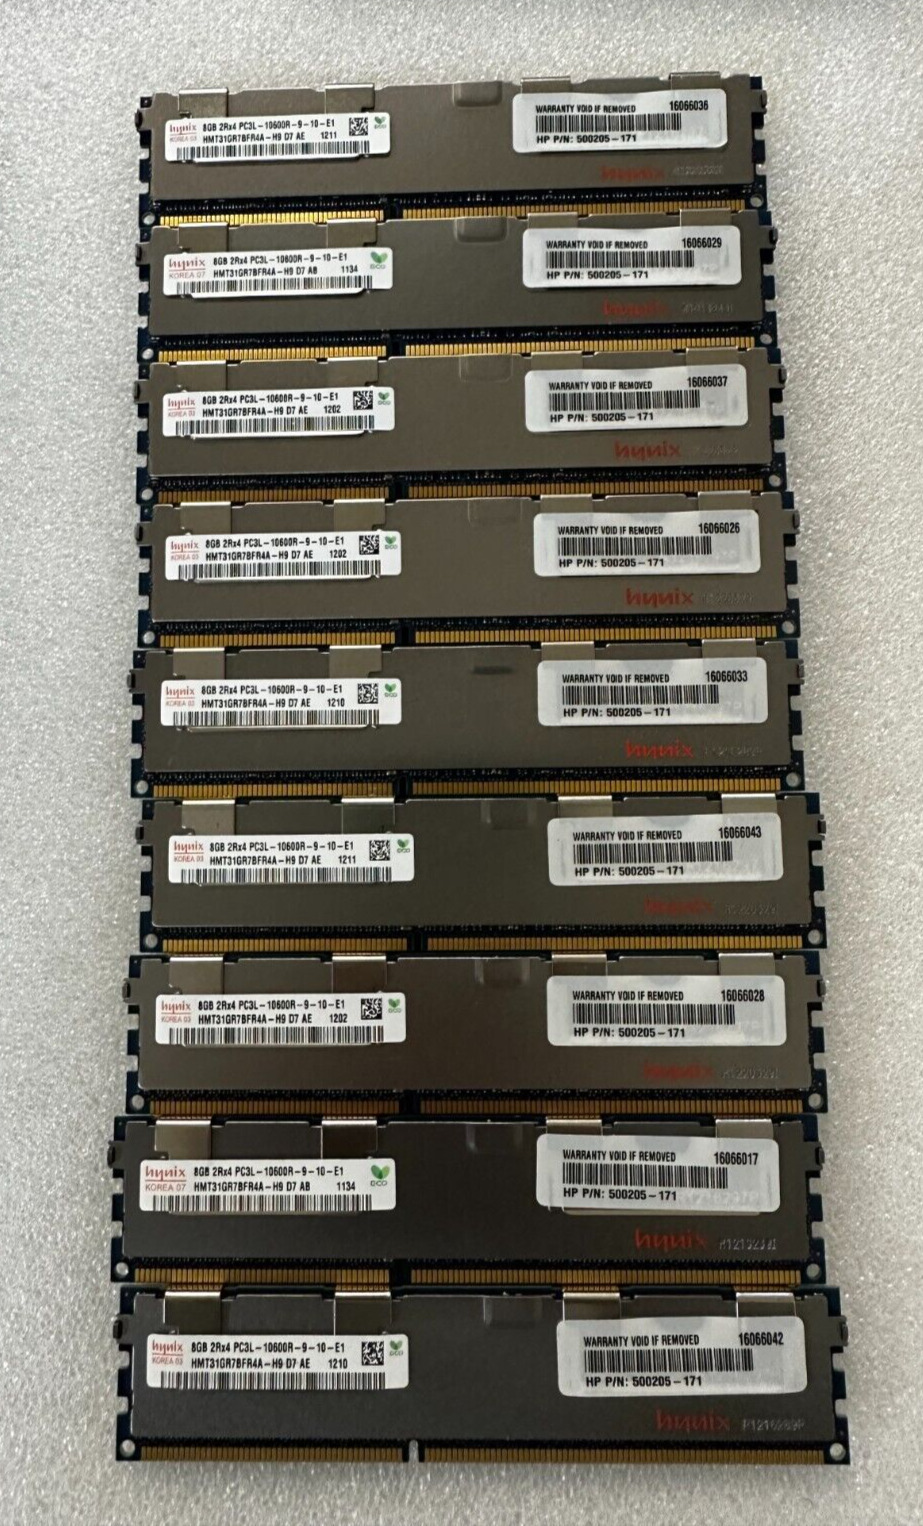 Lot of 9x 8GB Hynix 2Rx4 PC3-10600R Server RAM HMT31GR7AFR4A-H9 500205-171